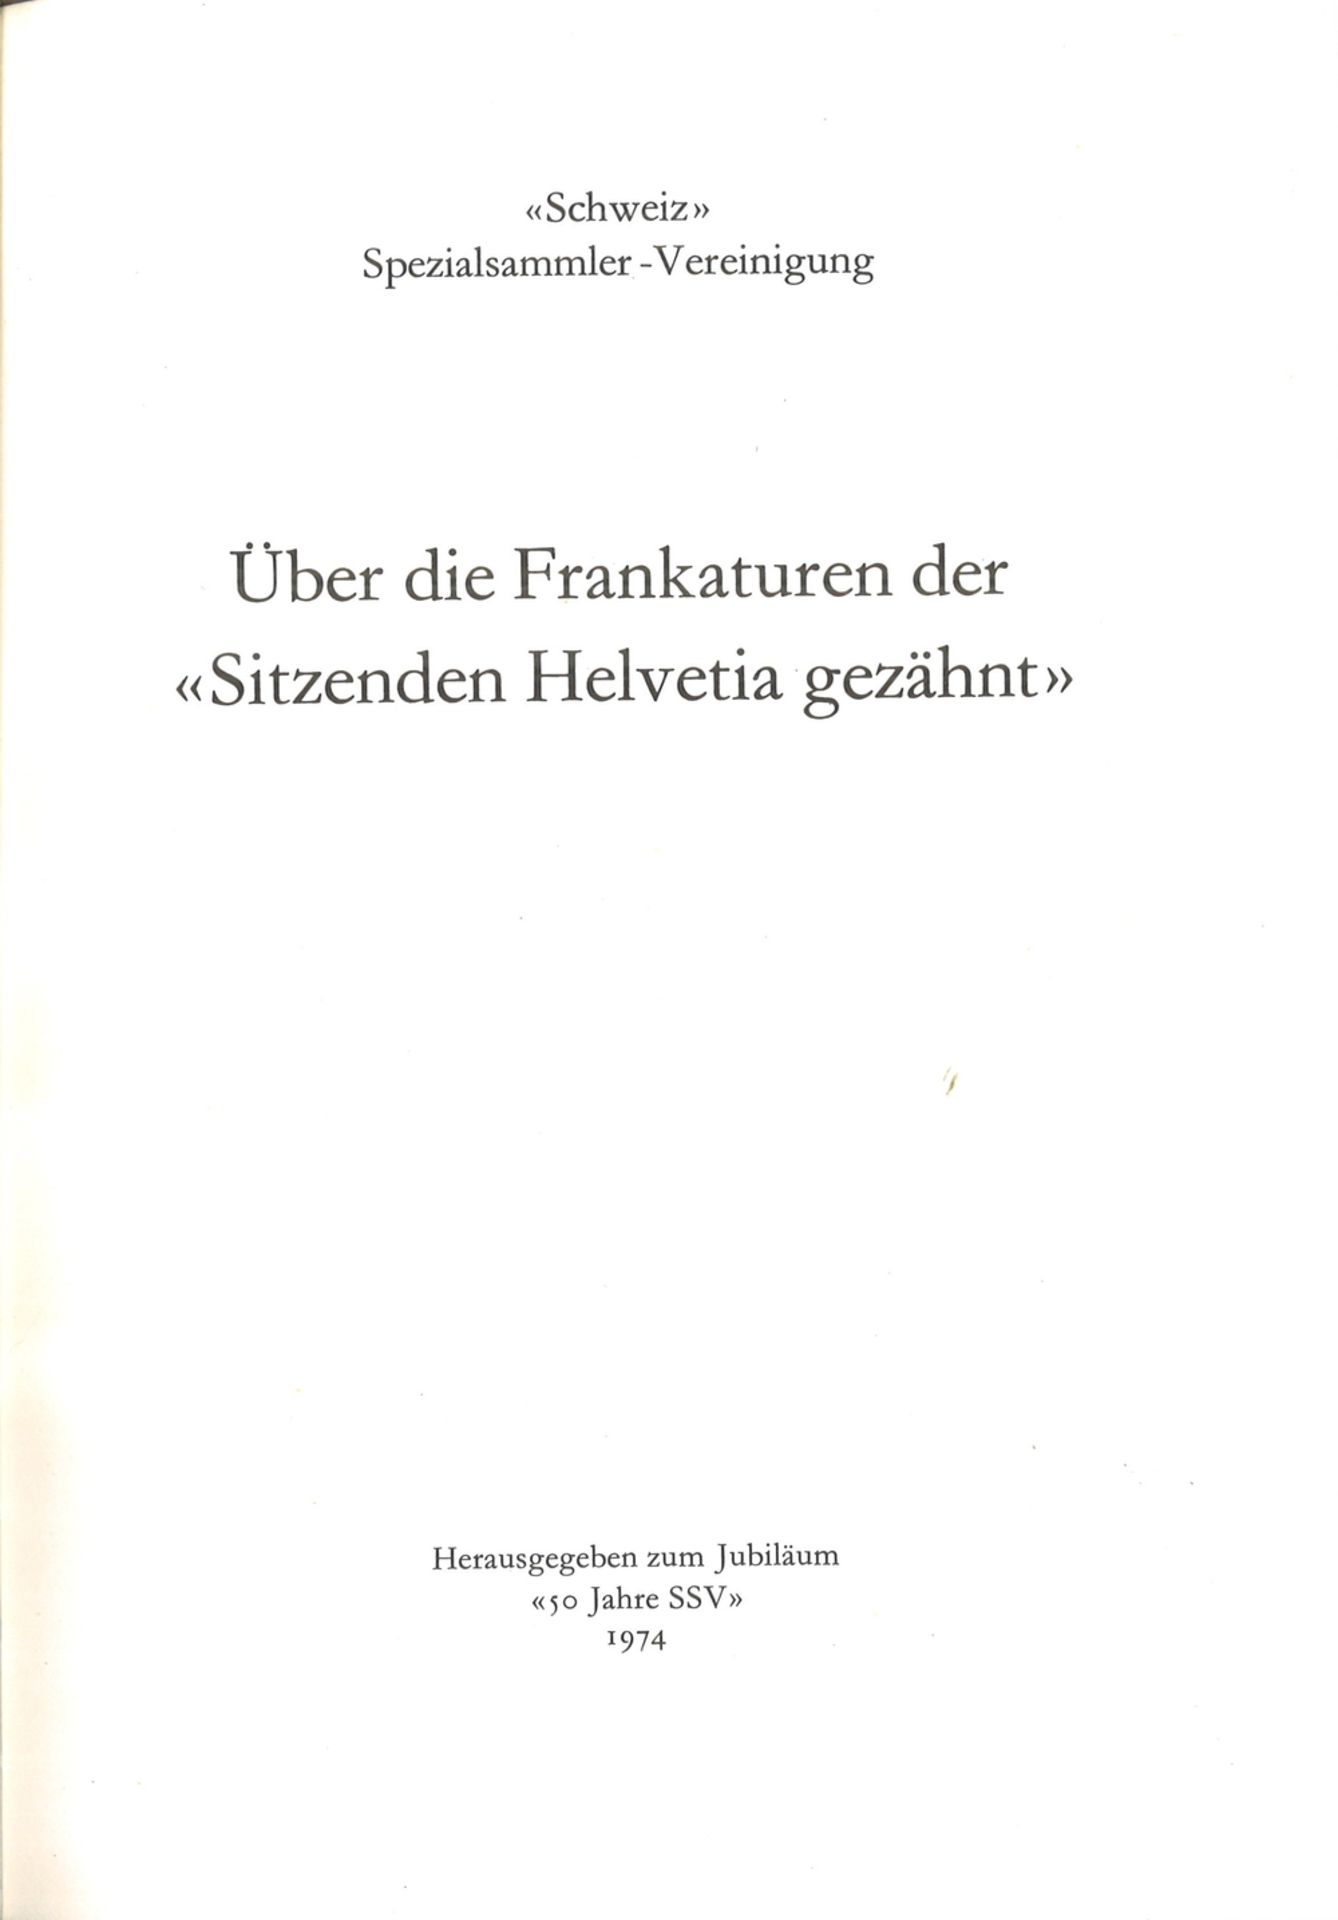 Spezialliteratur Schweiz - Über die Frankaturen der sitzenden Helvetia gezähmt. Gebunden, 64